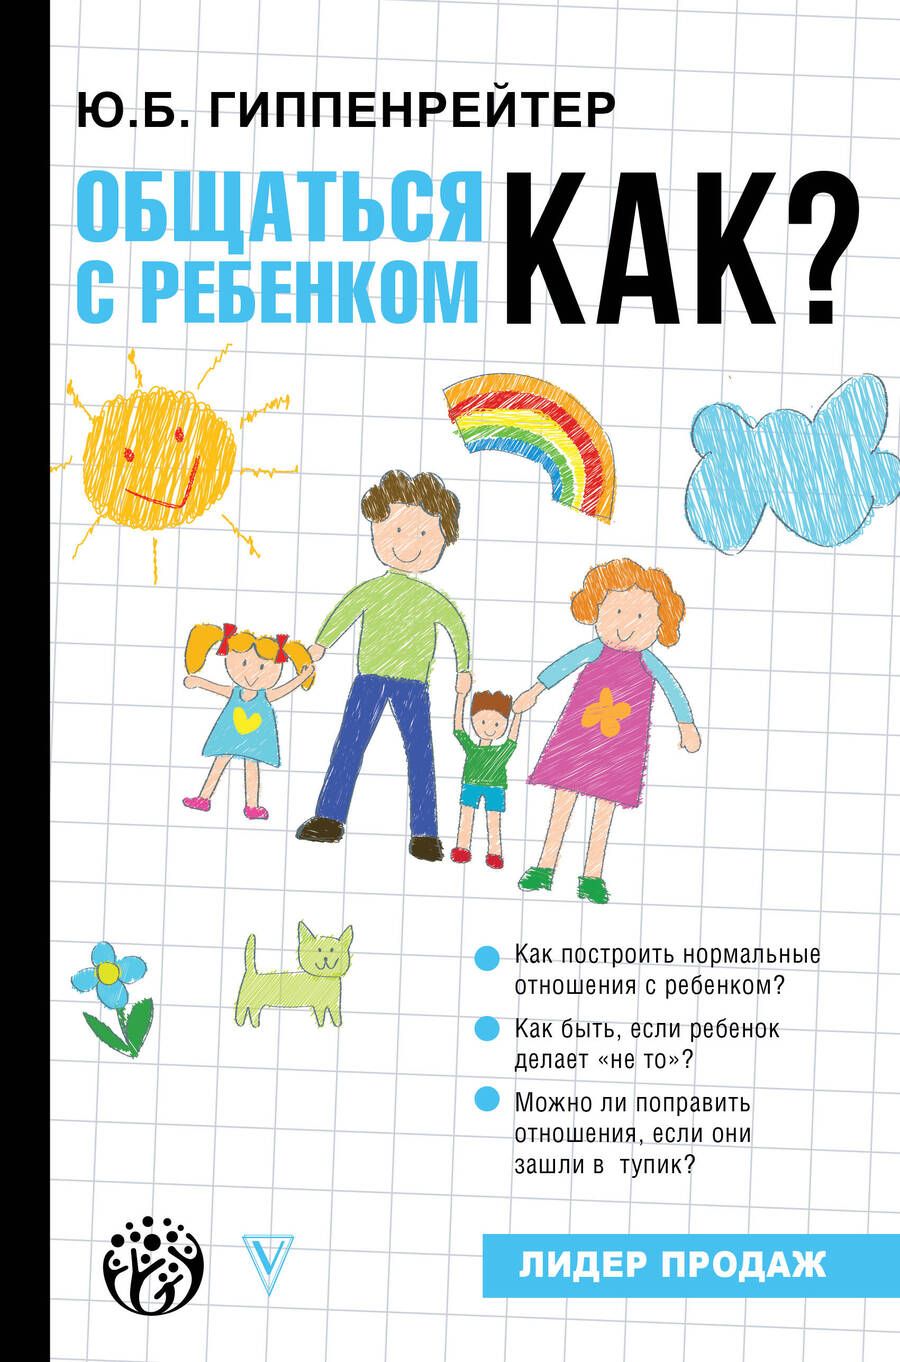 Обложка книги "Юлия Гиппенрейтер: Общаться с ребенком. Как?"